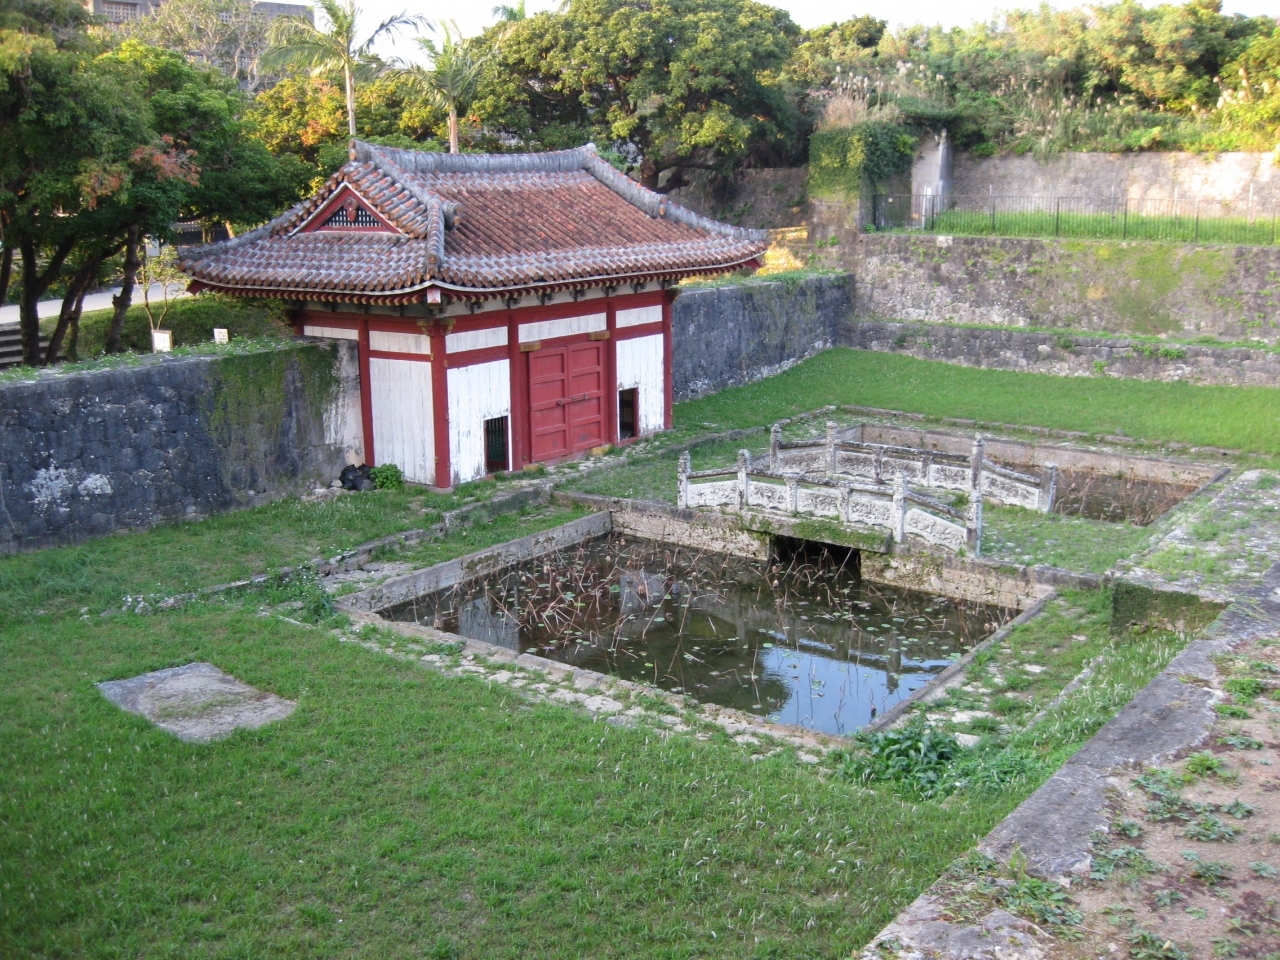 首里城の隣にある、円覚寺跡です。

琉球の臨済宗の総本山でしたが、太平洋戦争で焼失しました。
